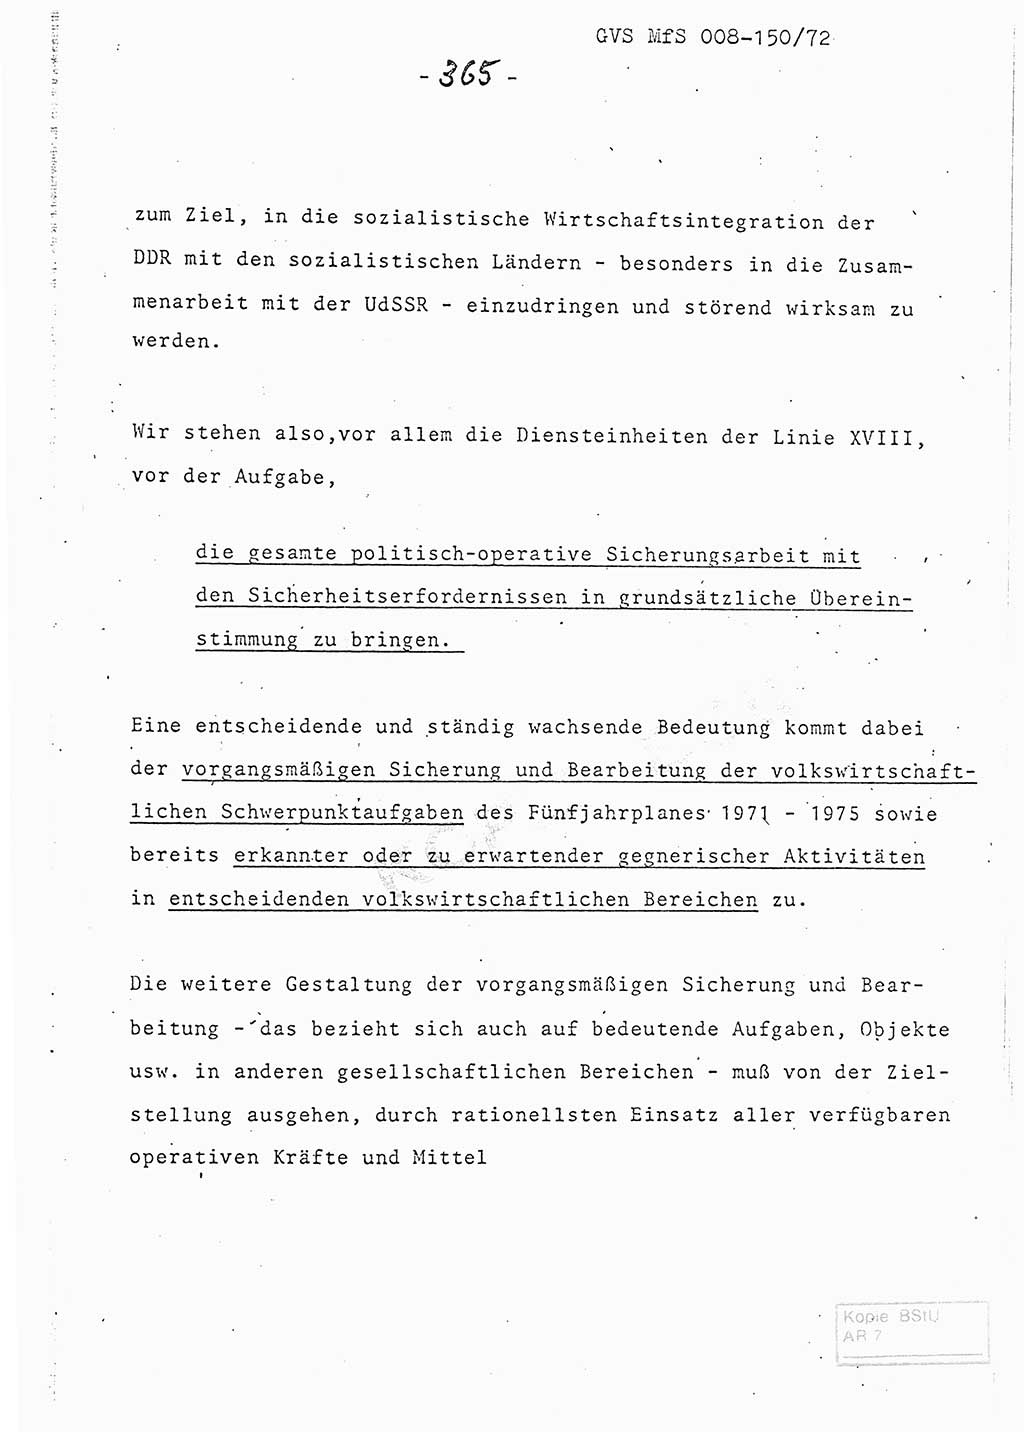 Referat (Entwurf) des Genossen Minister (Generaloberst Erich Mielke) auf der Dienstkonferenz 1972, Ministerium für Staatssicherheit (MfS) [Deutsche Demokratische Republik (DDR)], Der Minister, Geheime Verschlußsache (GVS) 008-150/72, Berlin 25.2.1972, Seite 365 (Ref. Entw. DK MfS DDR Min. GVS 008-150/72 1972, S. 365)